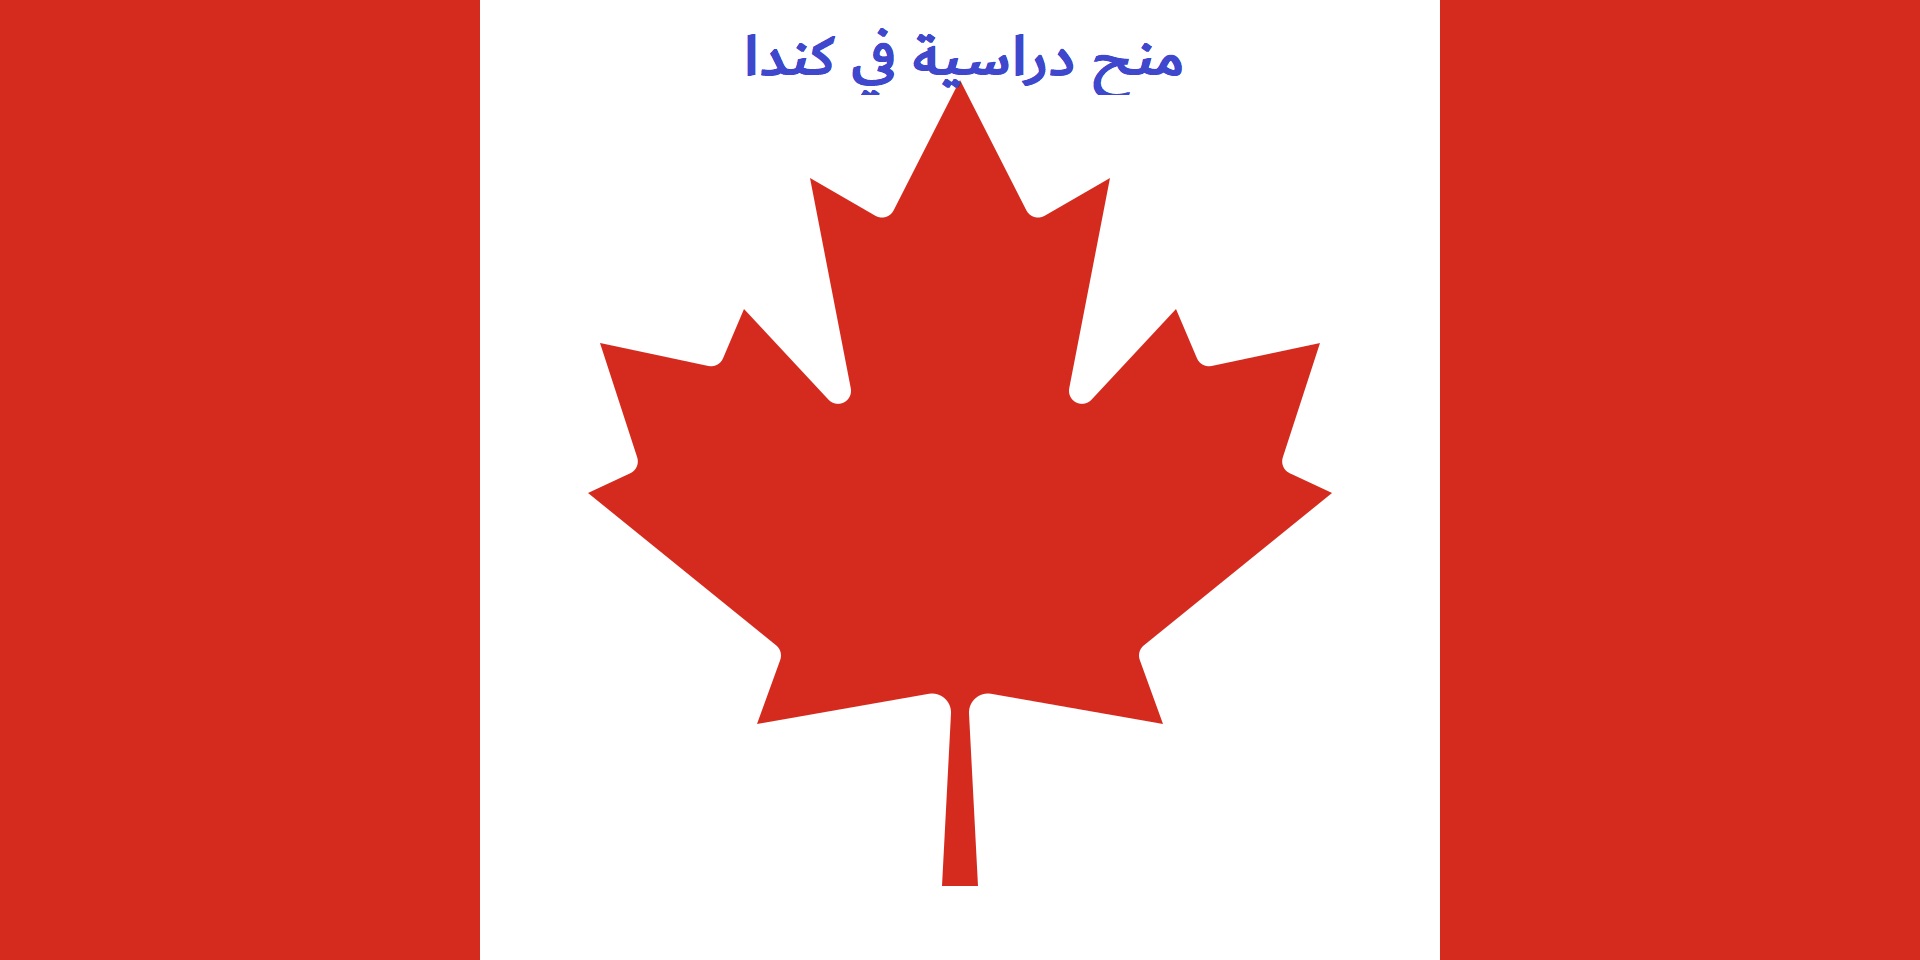 كندا: منحة جامعة يورك الكندية بتمويل كامل